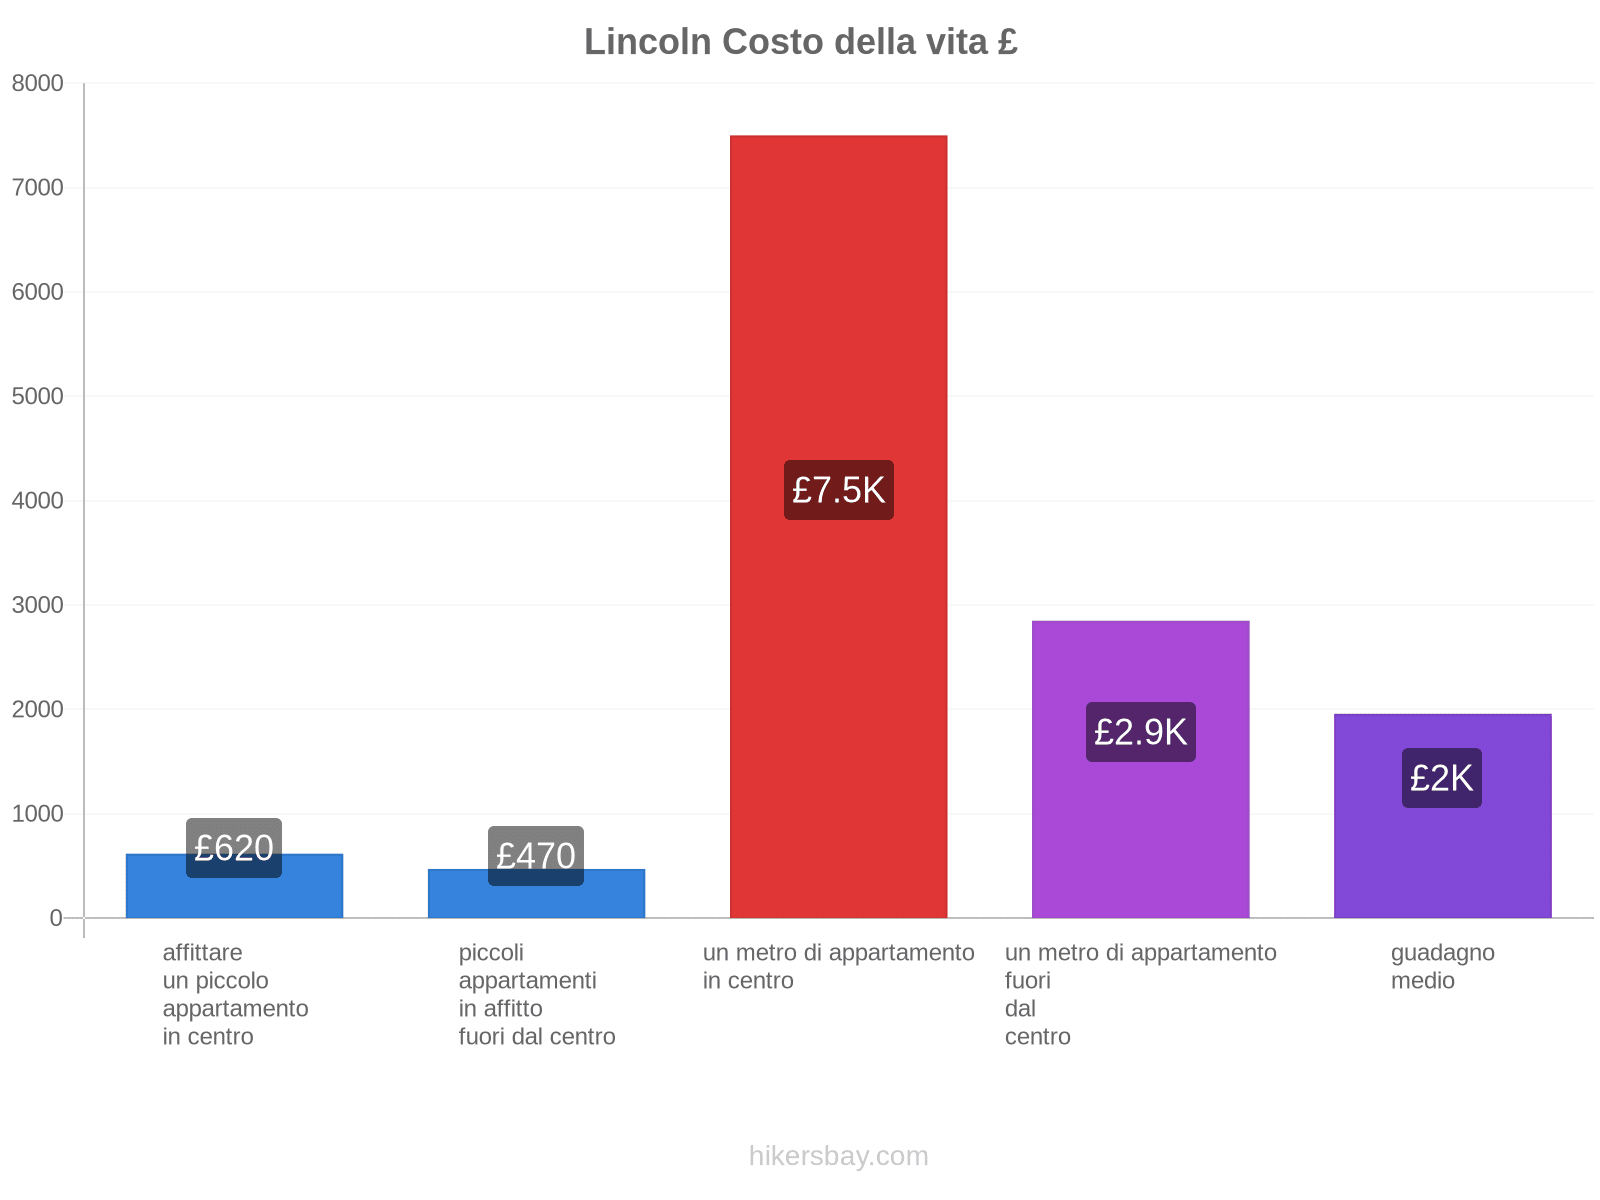 Lincoln costo della vita hikersbay.com